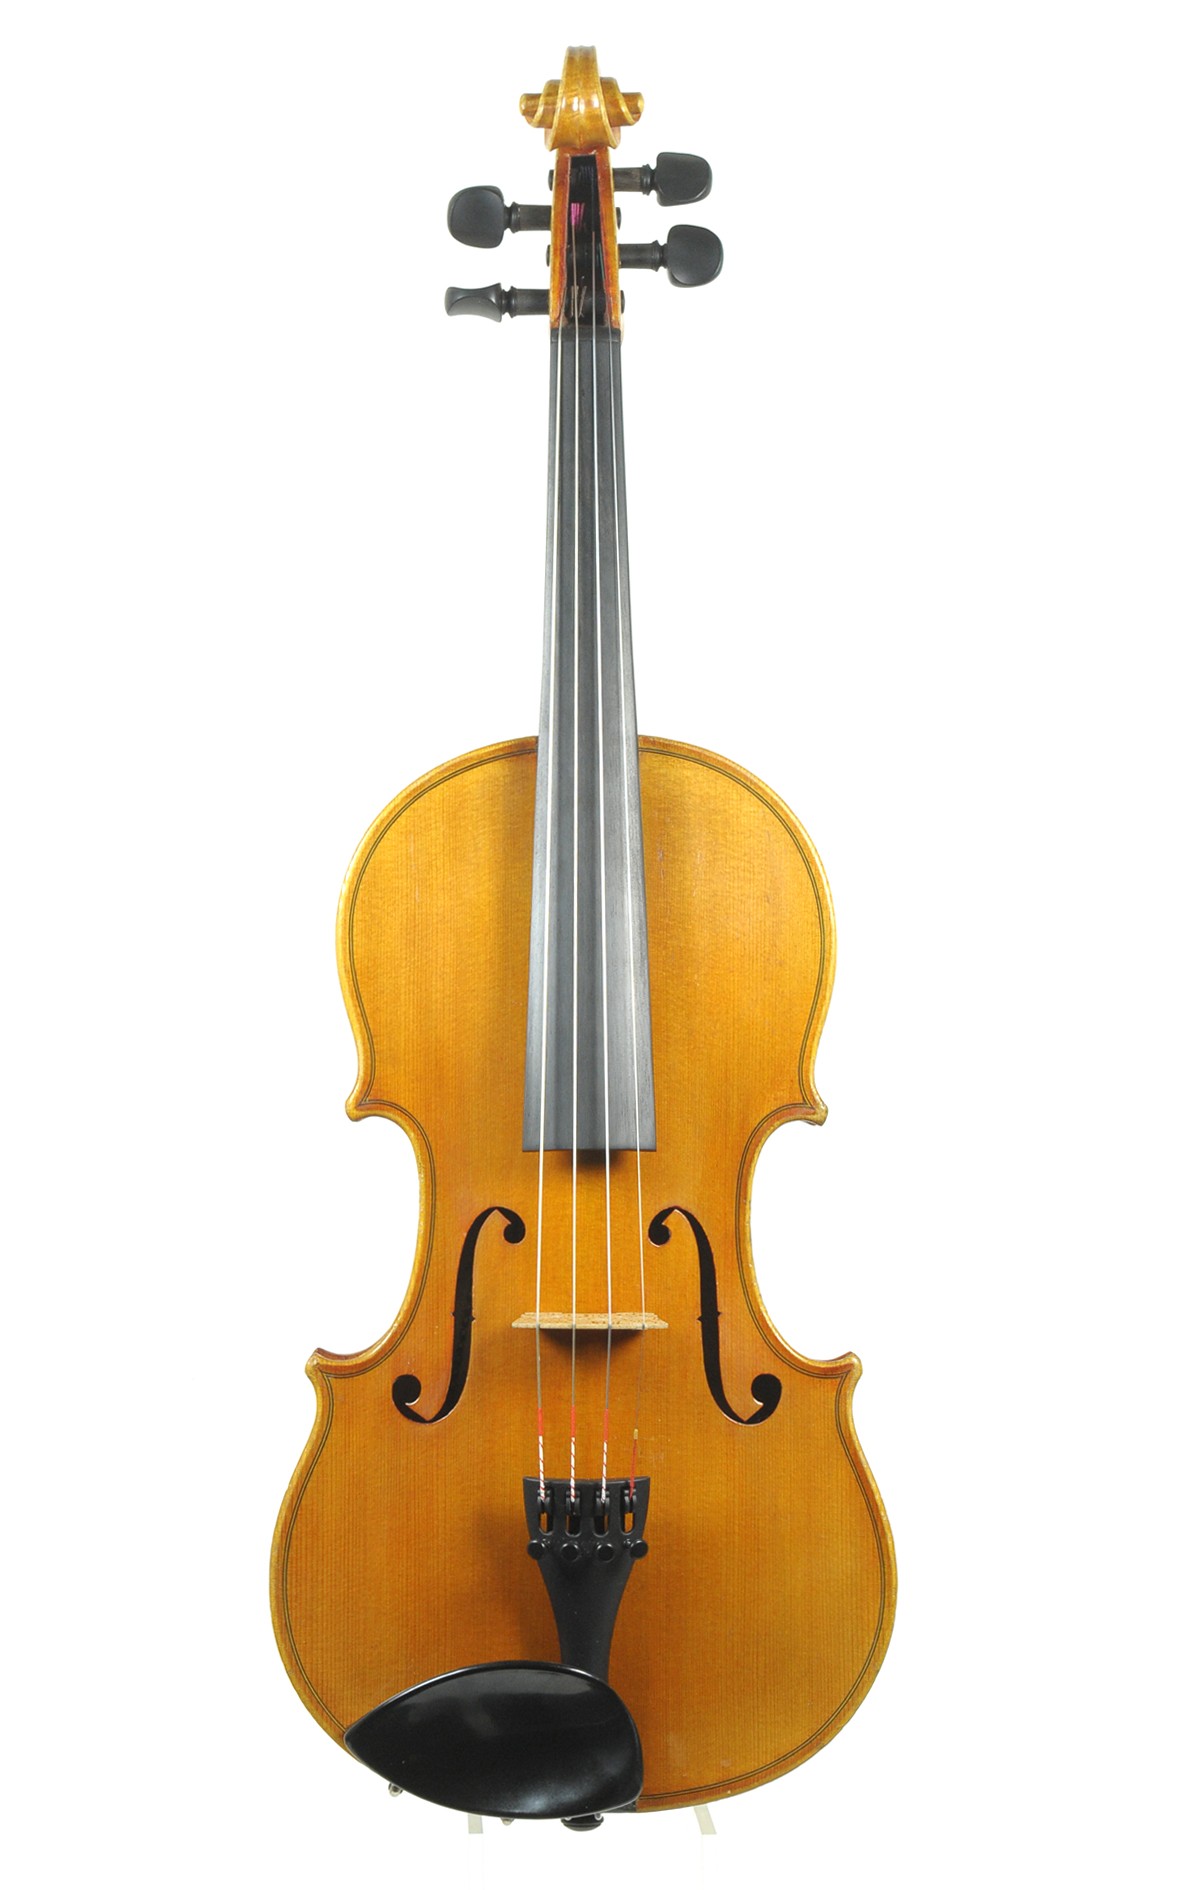 Fine Markneukirchen master violin - two piece top